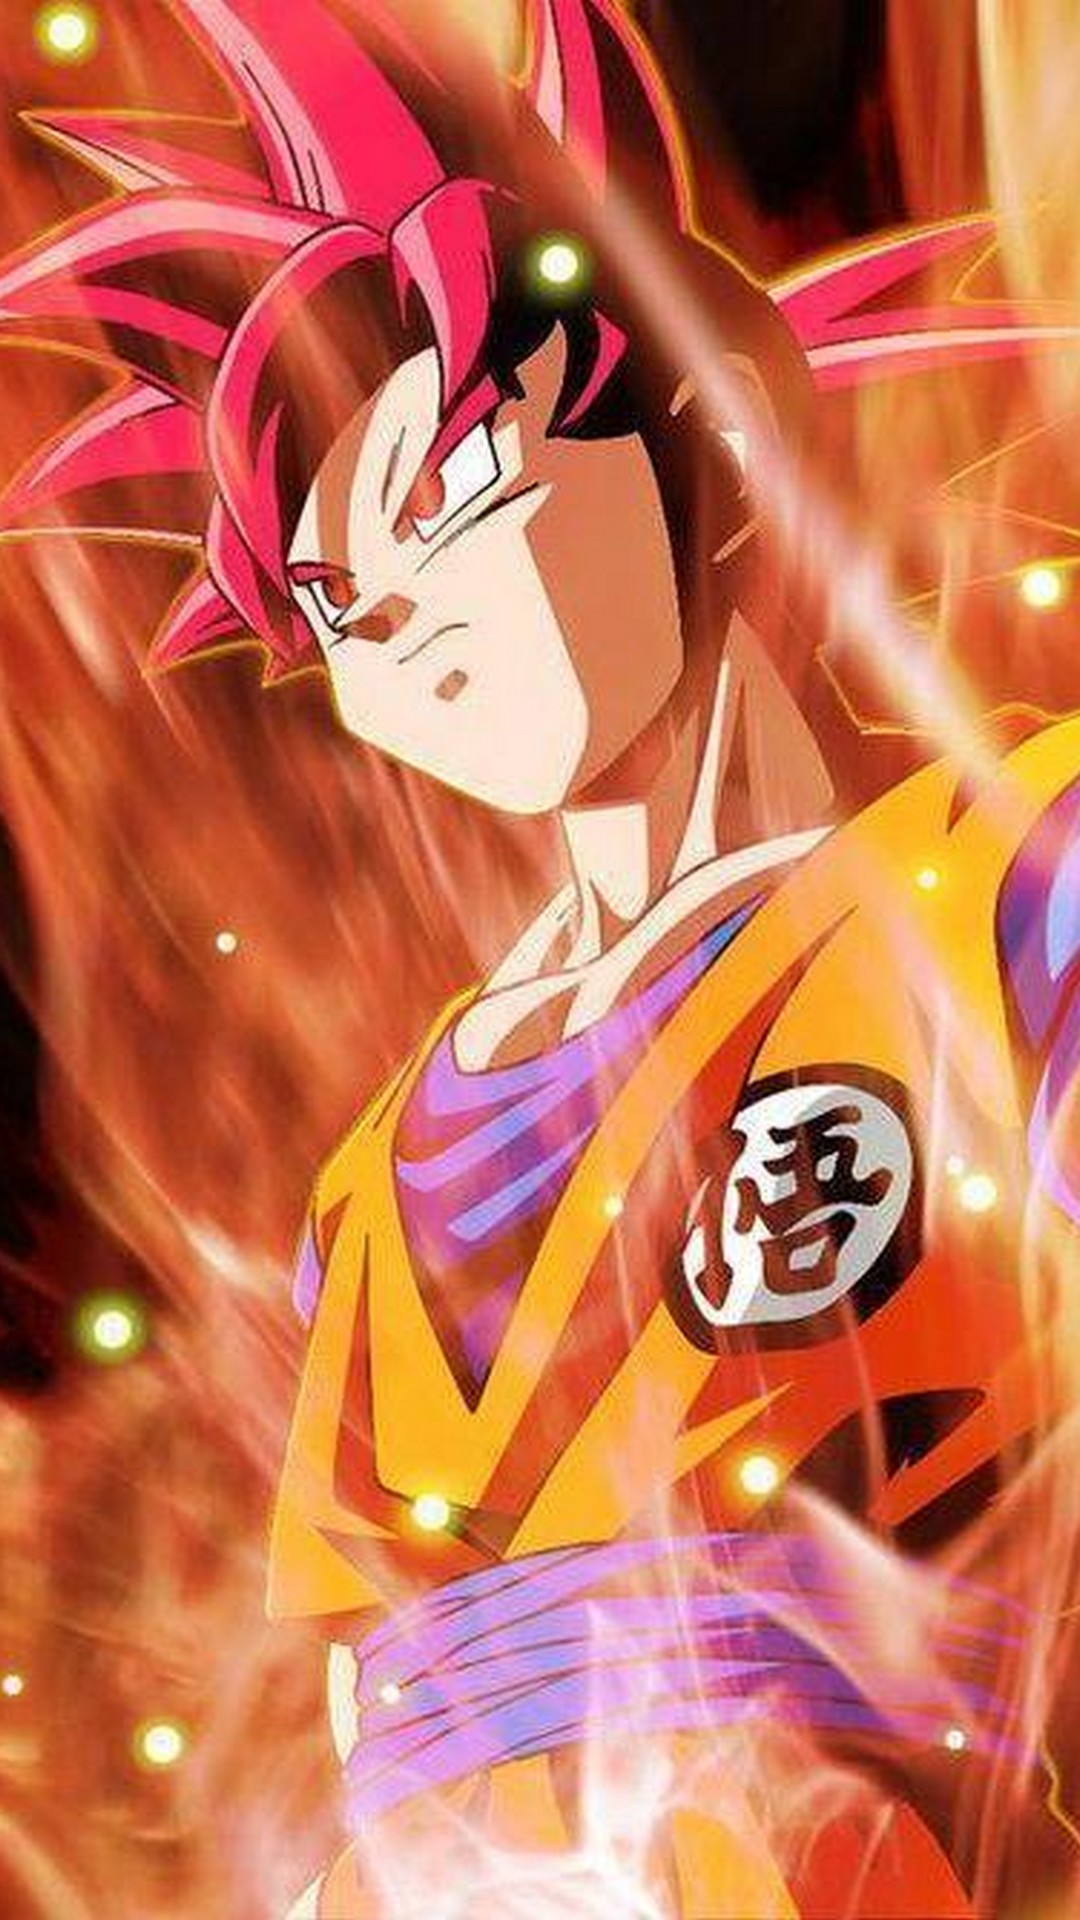 Wallpapers Goku Super Saiyan God with HD resolution 1080x1920